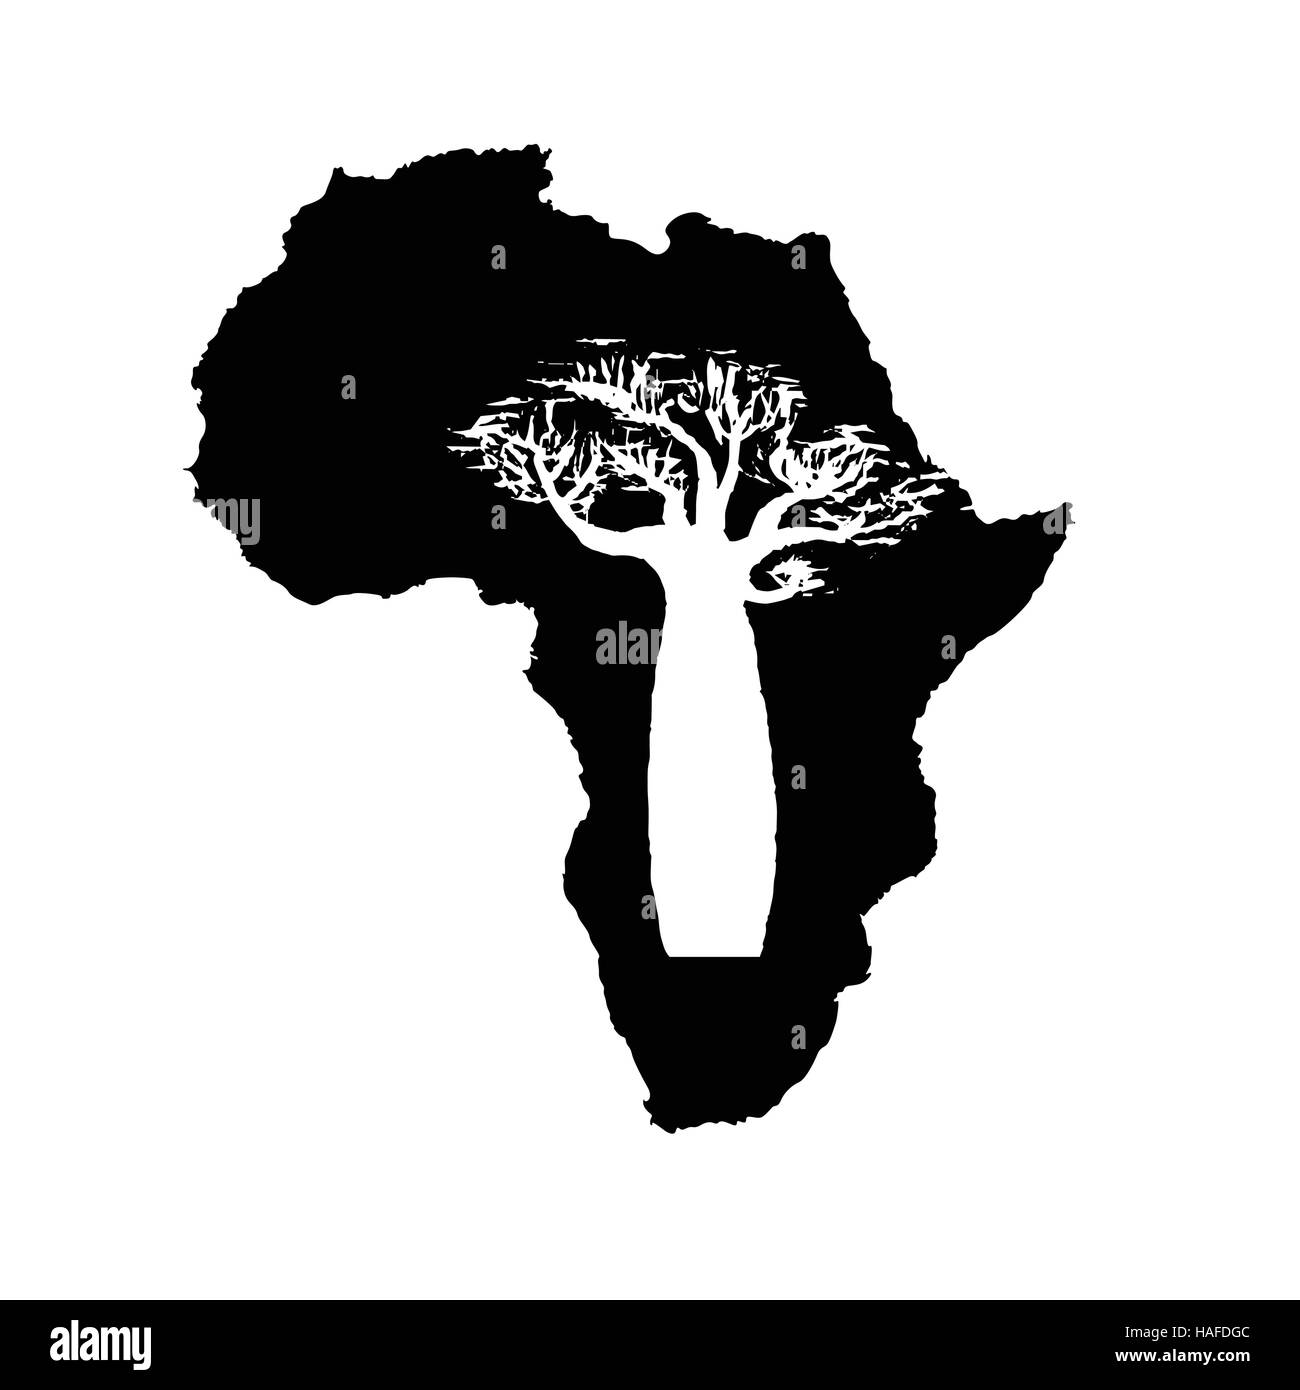 Silhouette vecteur d'Afrique noire avec l'intérieur blanc silhouette de baobab. Illustration de Vecteur